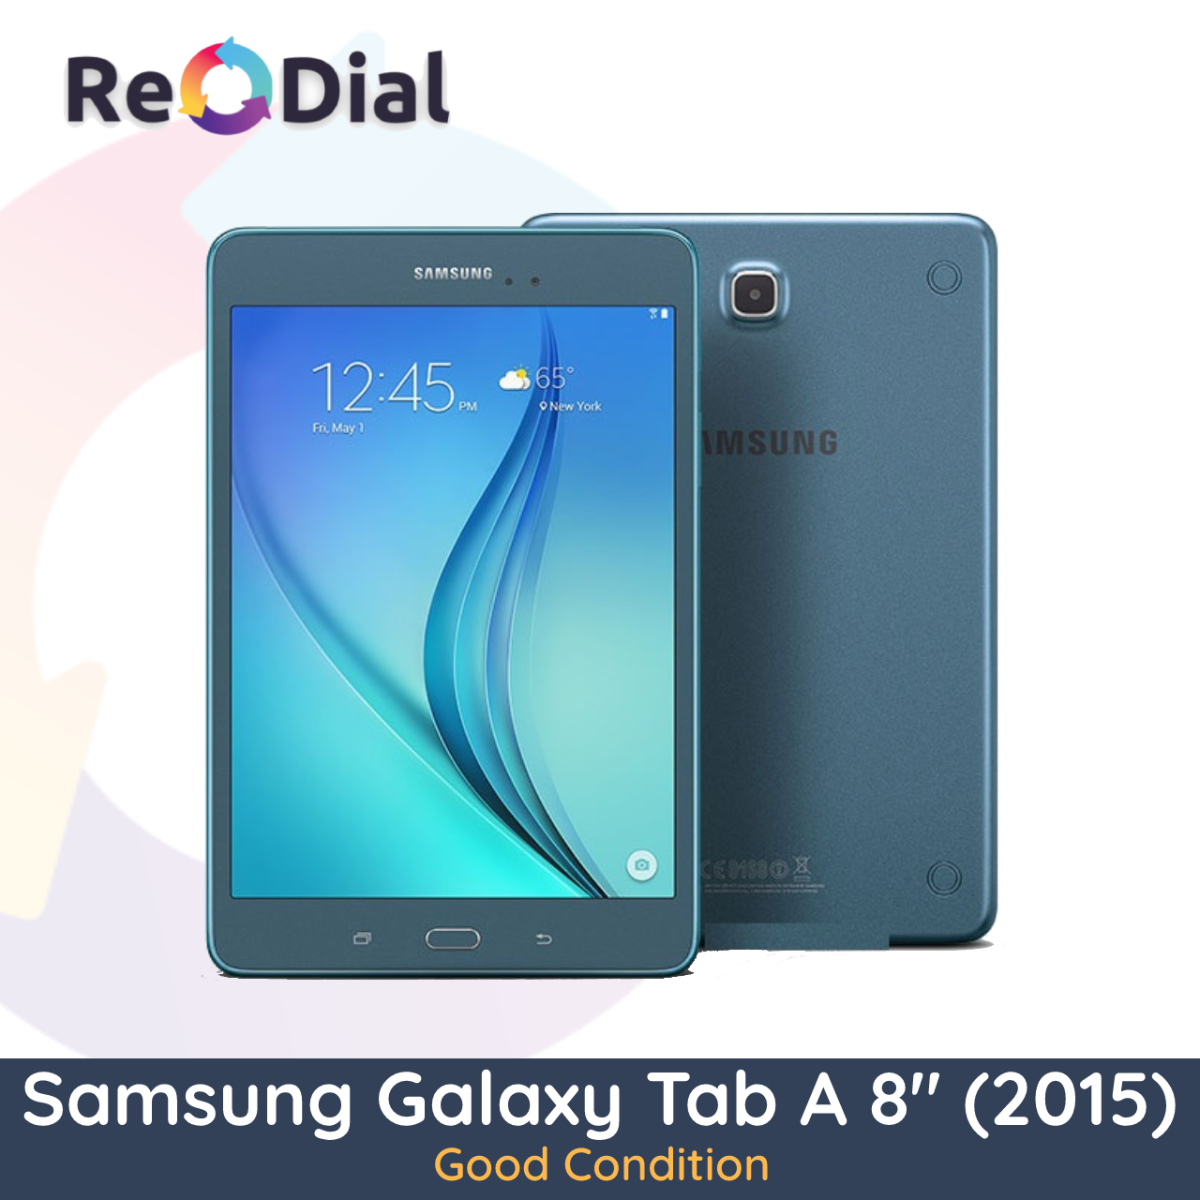 Samsung Galaxy Tab A 8.0" (T355Y / 2015) WiFi + Cellular - Good Condition